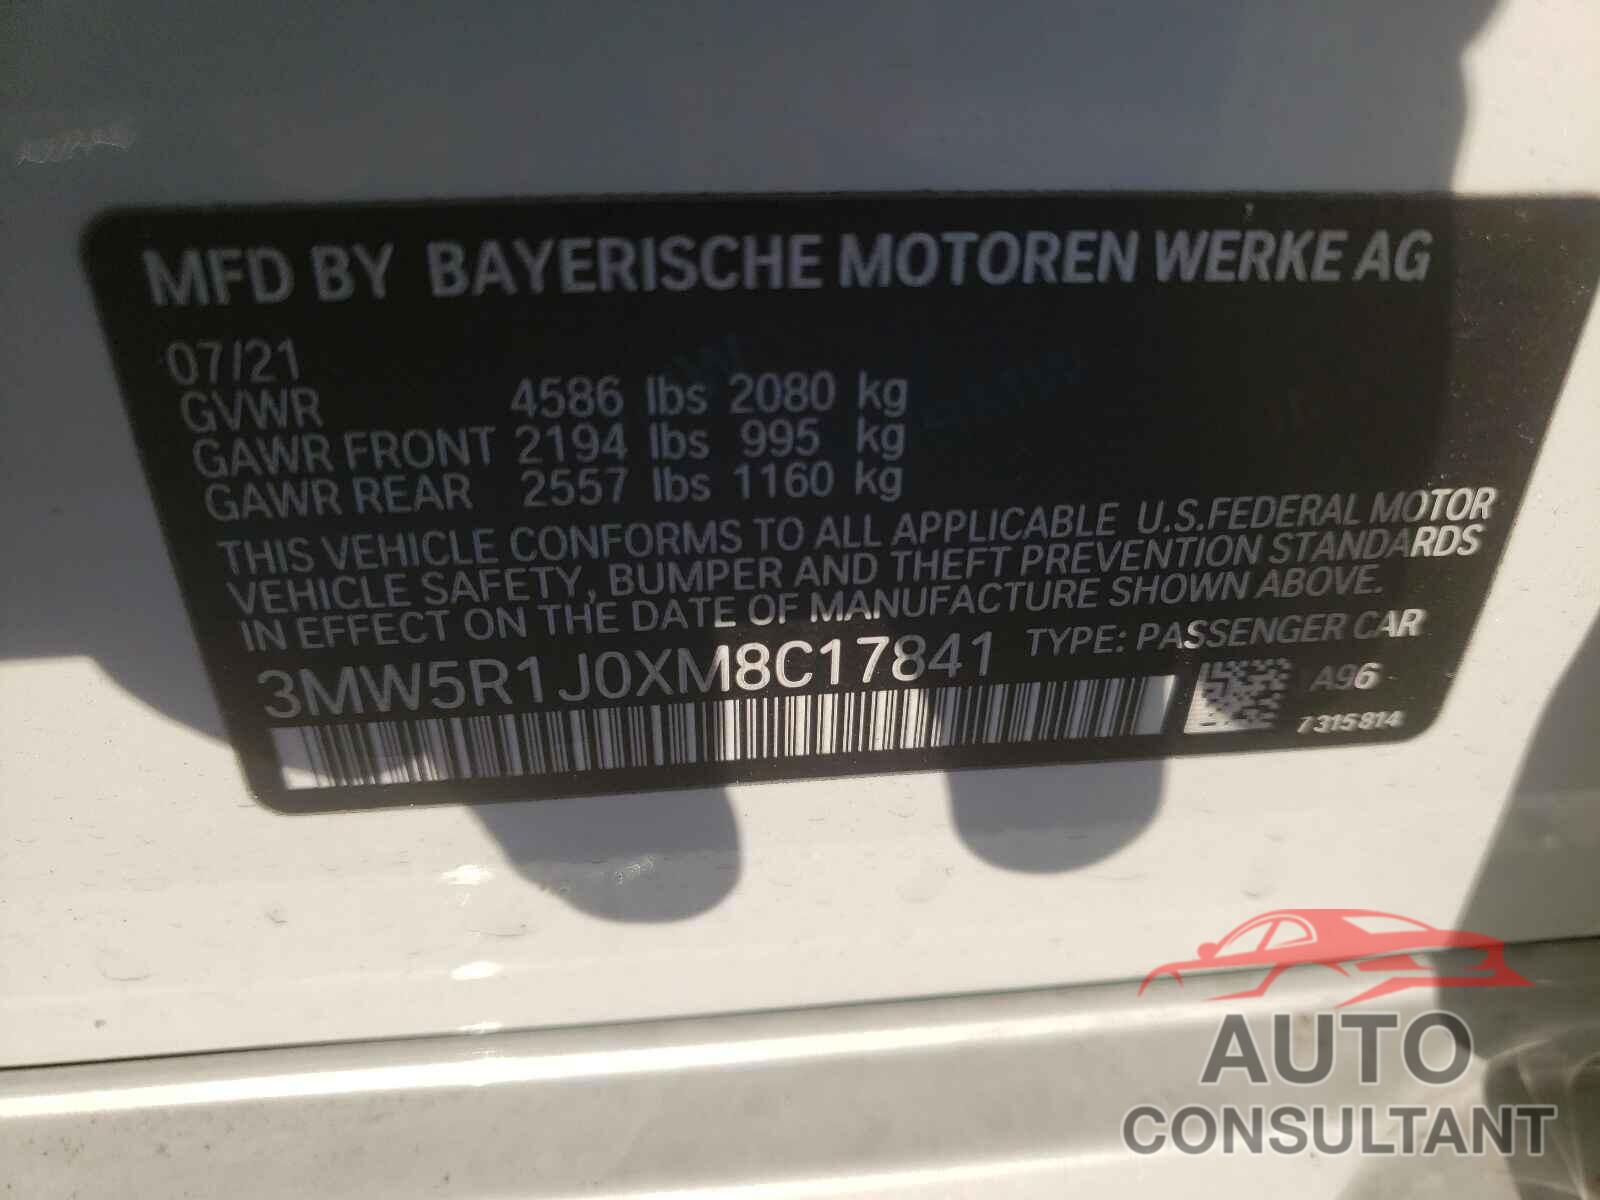 BMW 3 SERIES 2021 - 3MW5R1J0XM8C17841